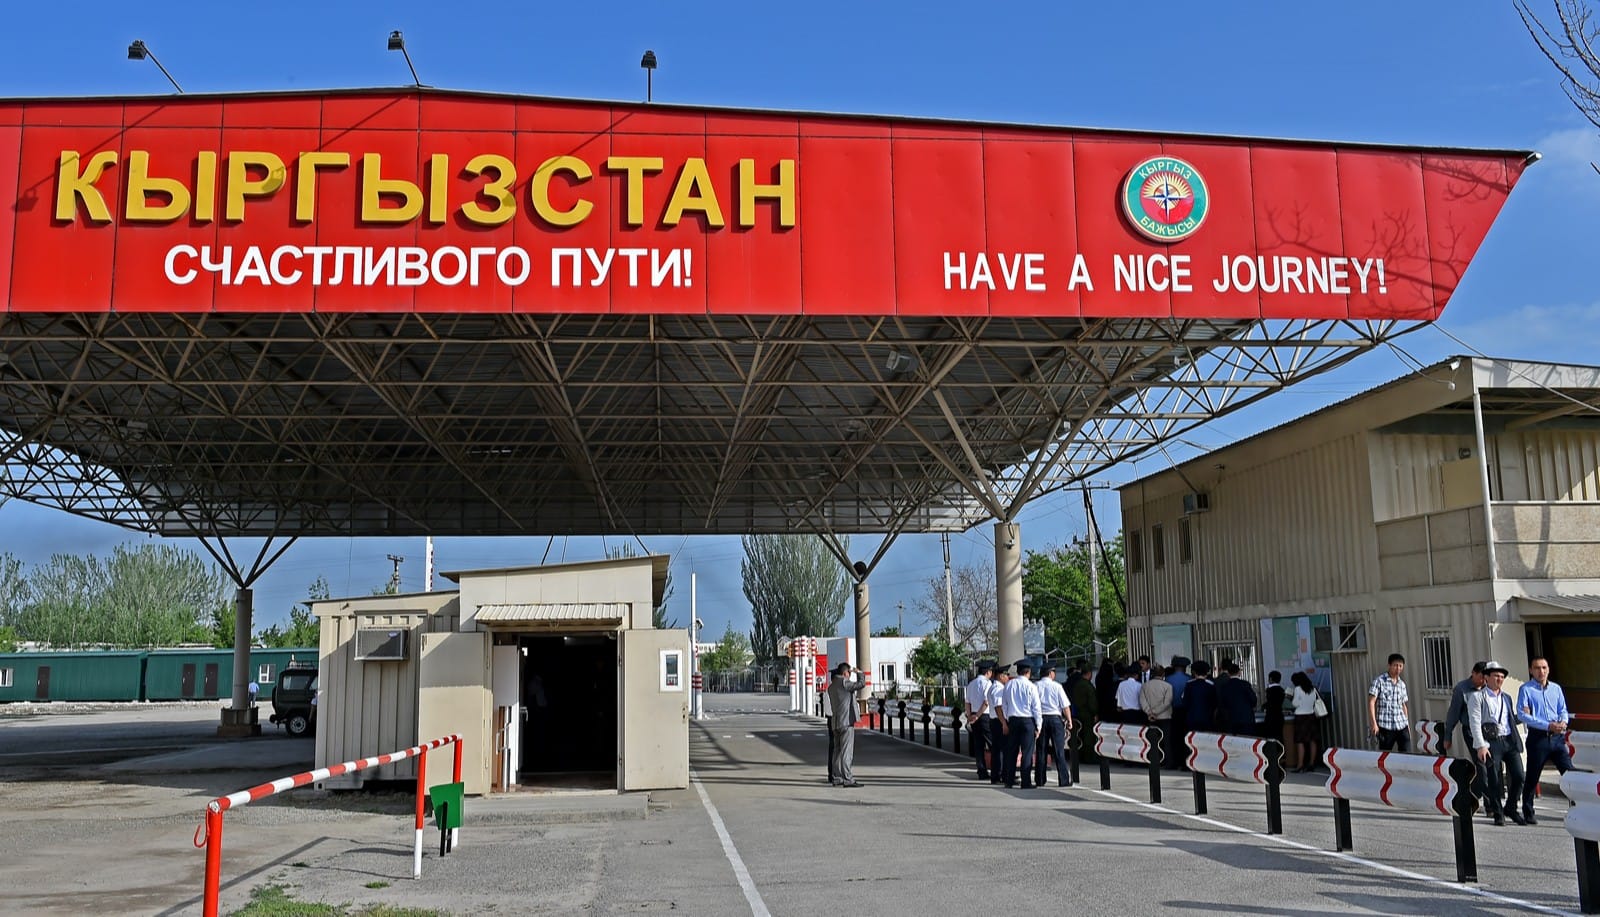 Кыргызстан и Узбекистан свели к 11% расхождения в «зеркальной» таможенной статистике